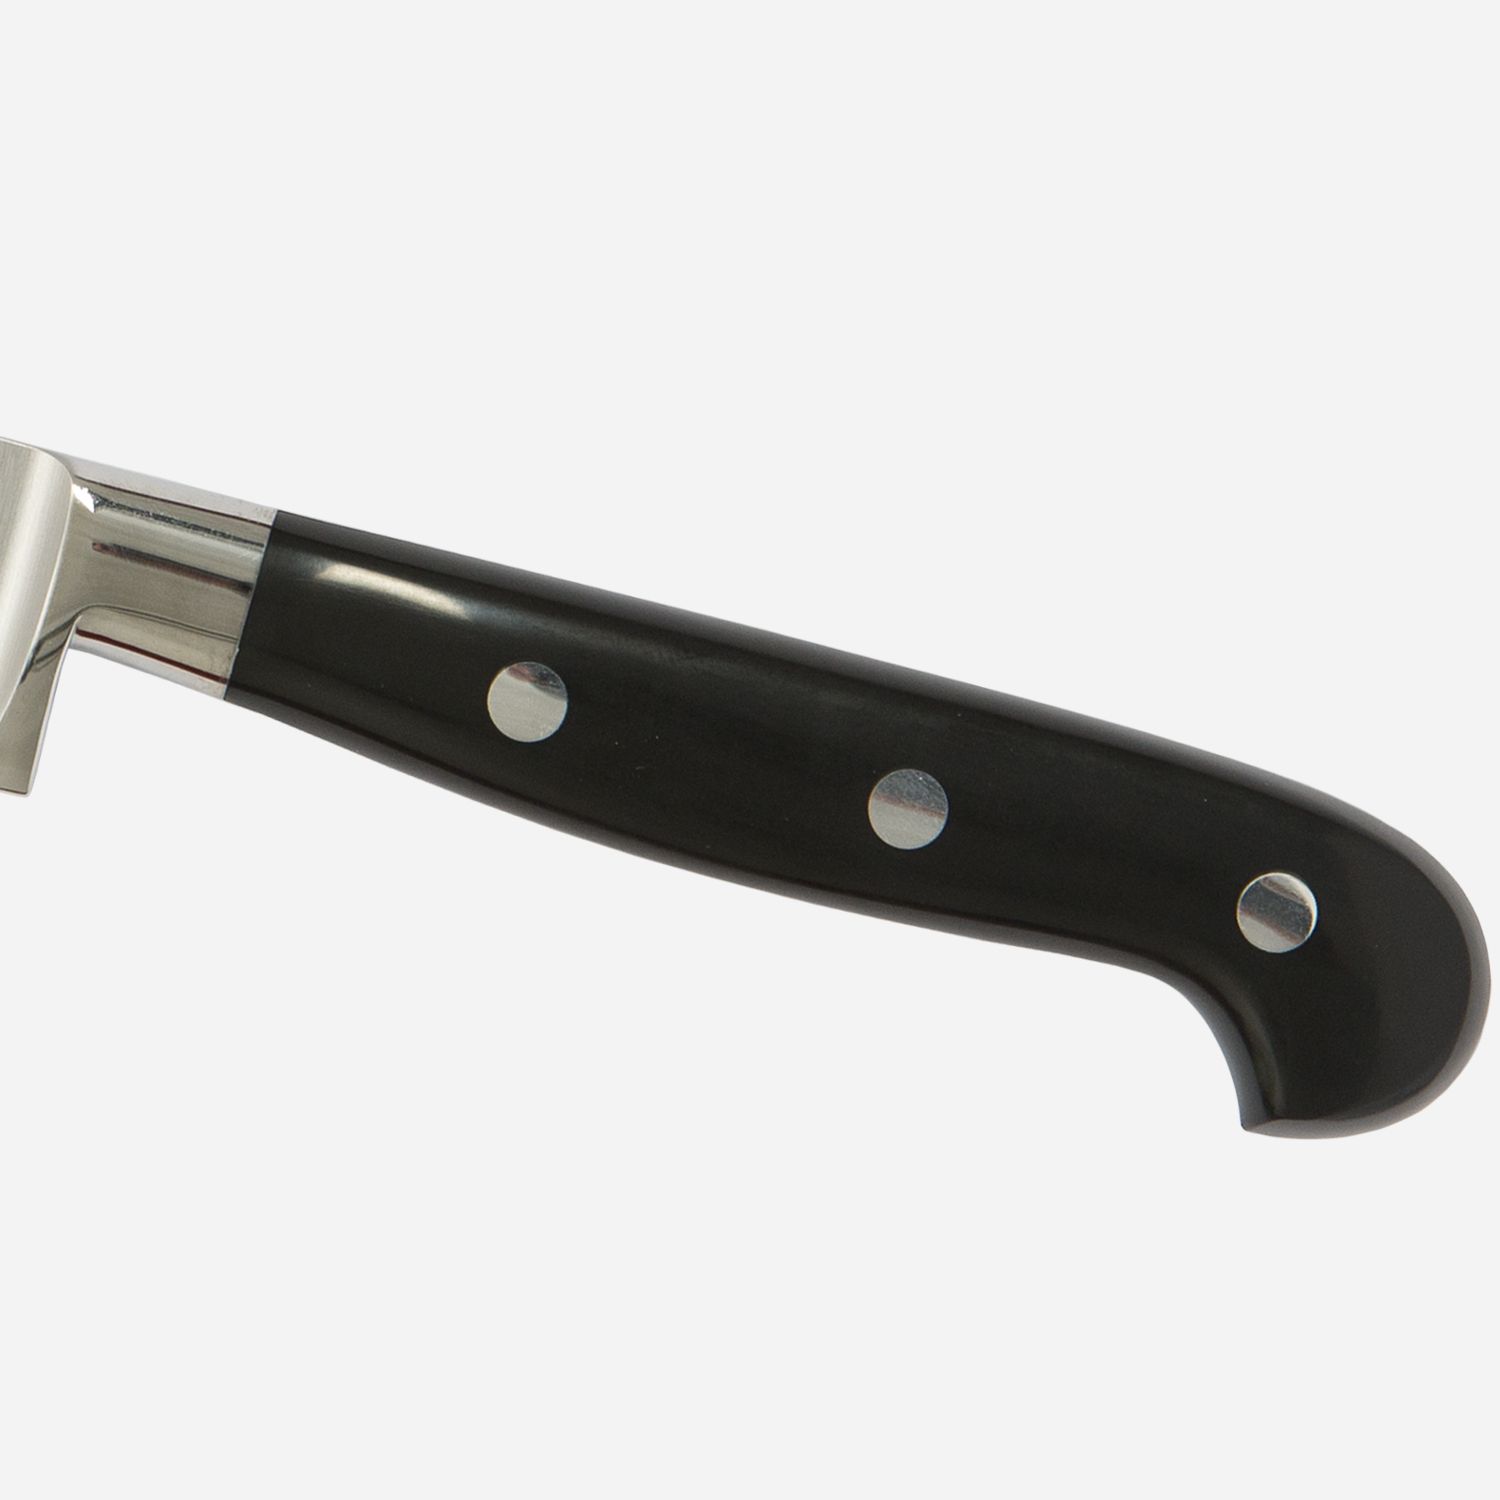 Bread knife cm.22 Stainless Steel Berkel Adhoc Handle Glossy Black Resin